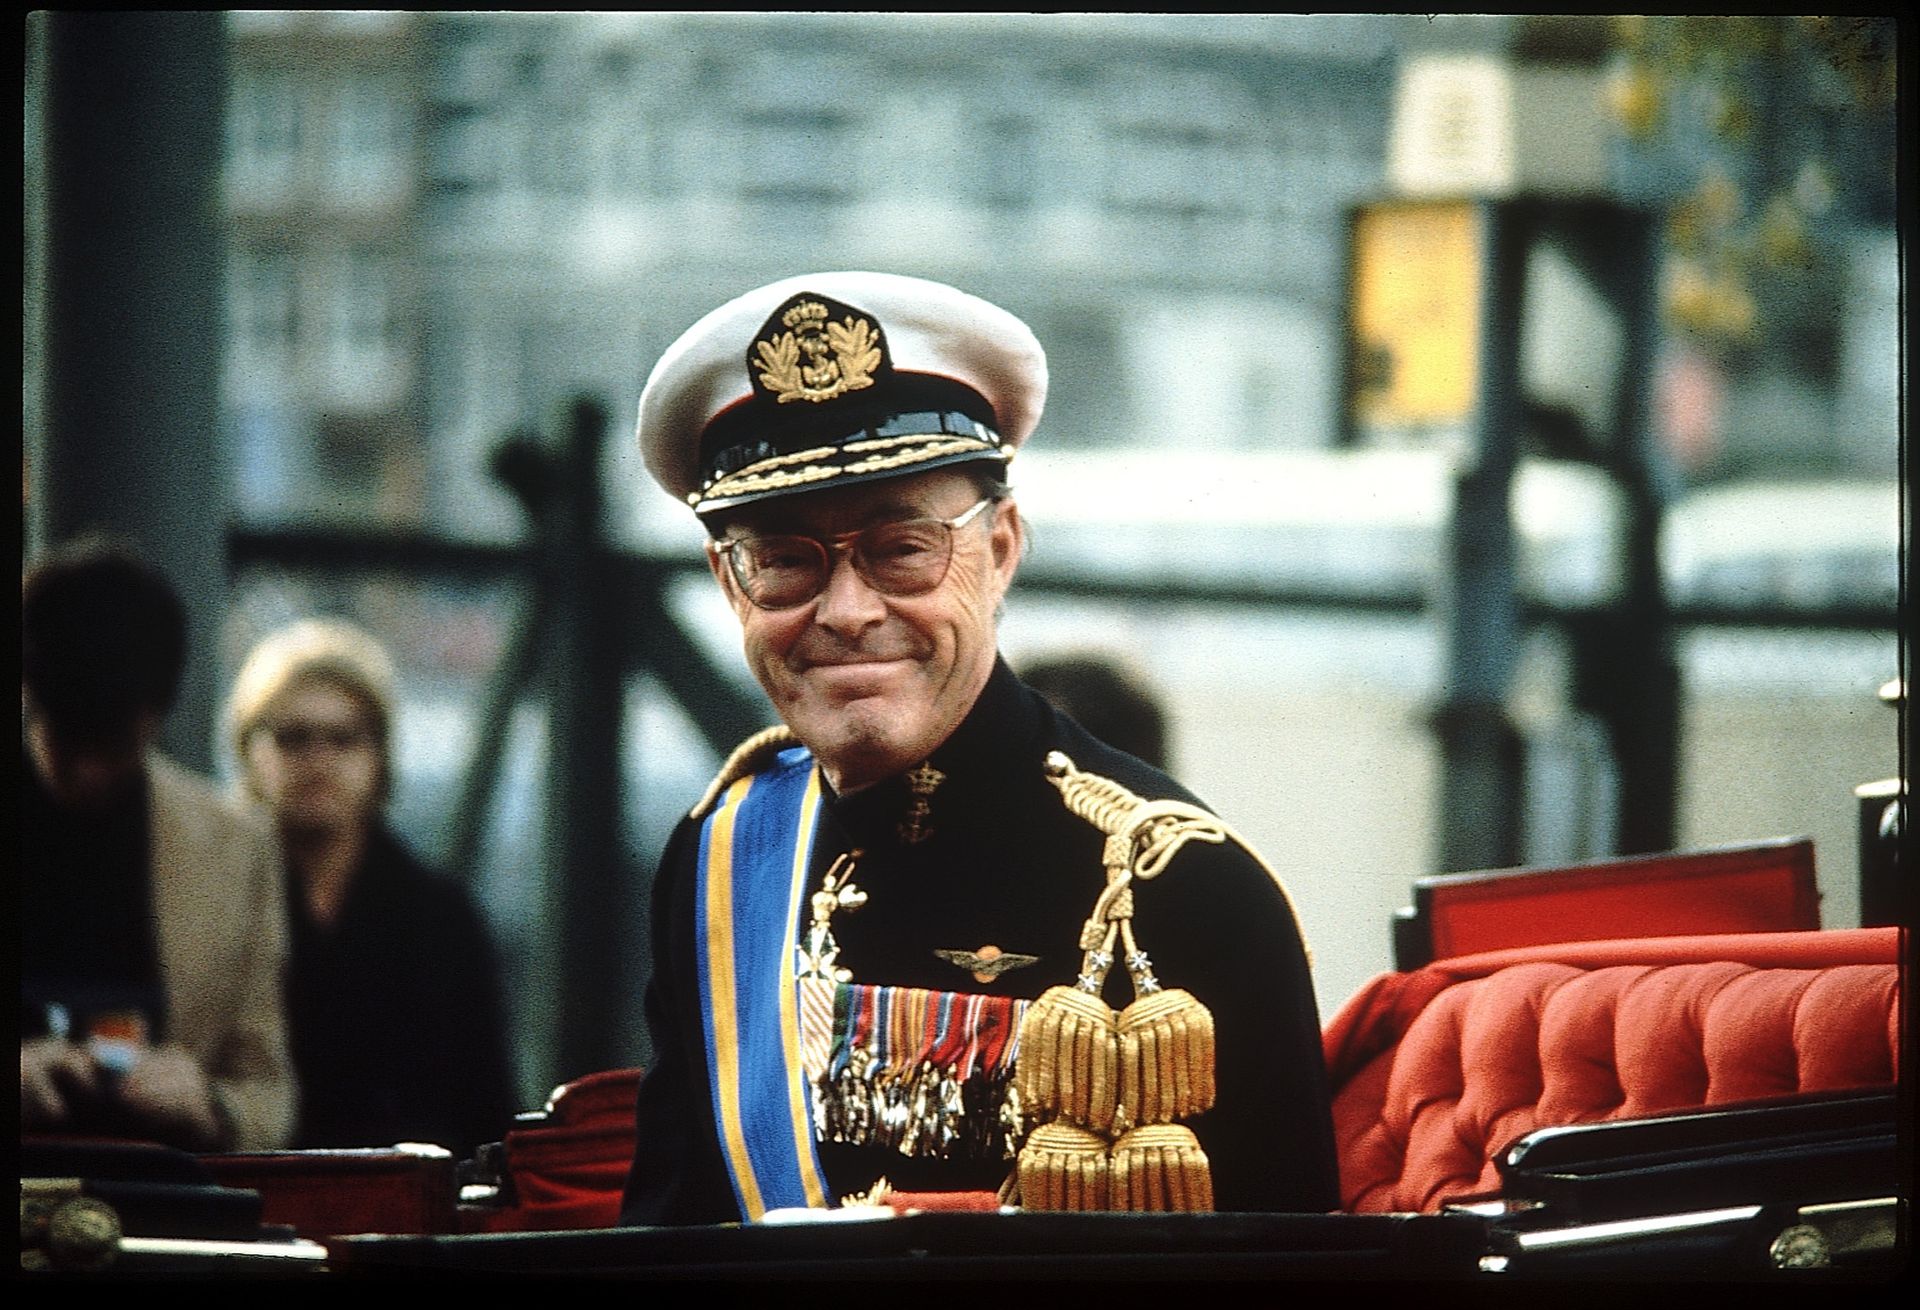 Prins Bernhard uniform 1974